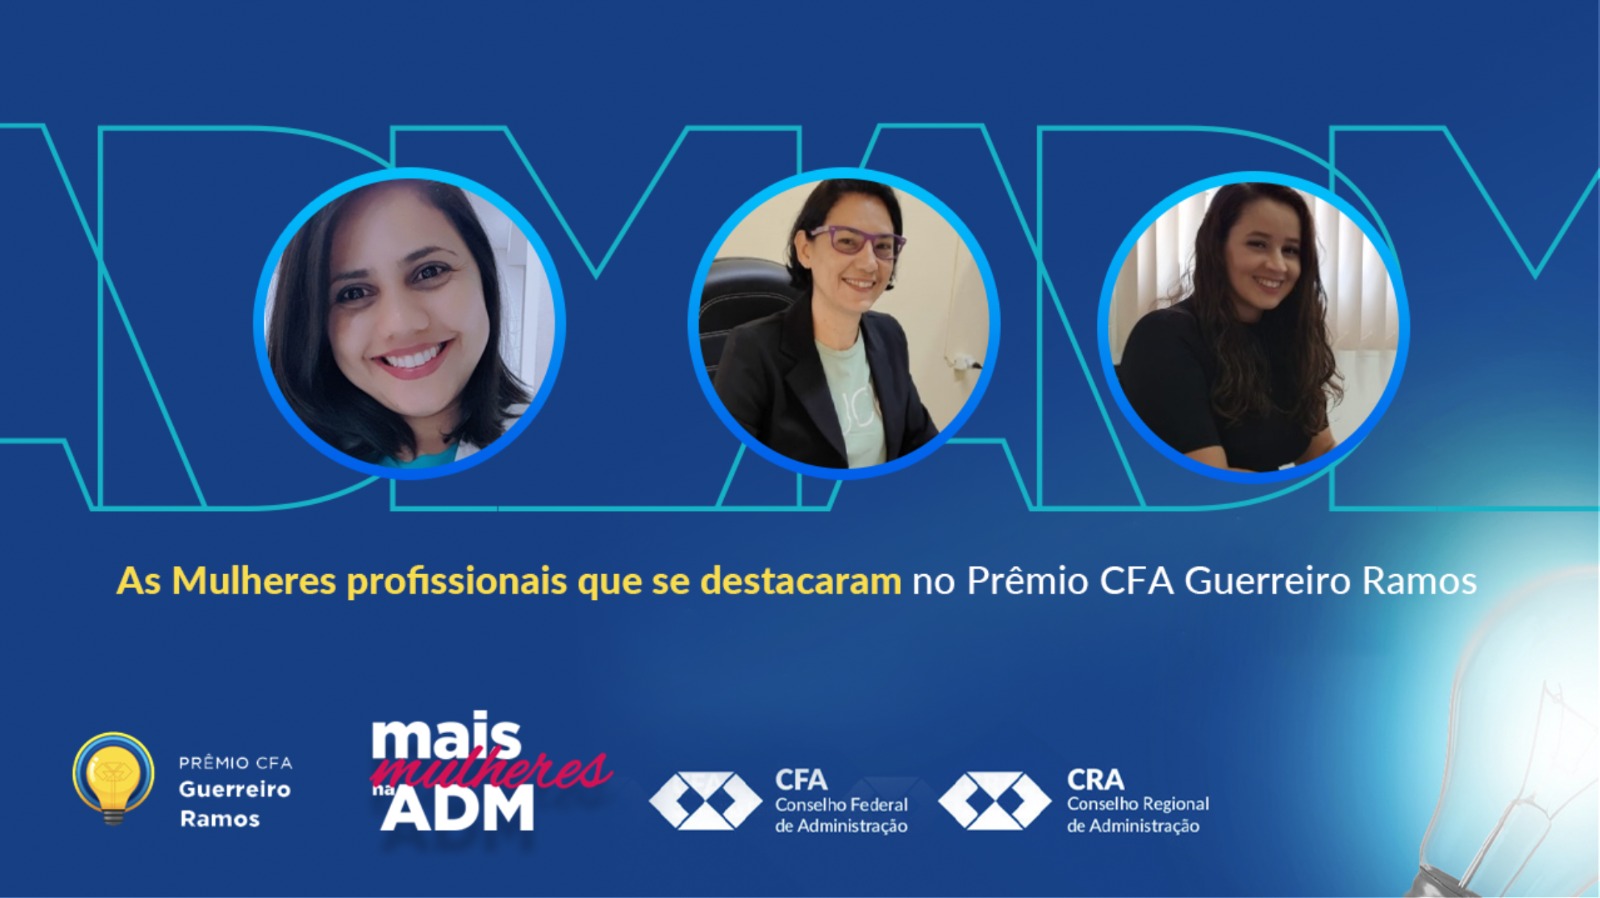 Você está visualizando atualmente No mês da mulher, conheça as profissionais que se destacaram no Prêmio CFA Guerreiro Ramos